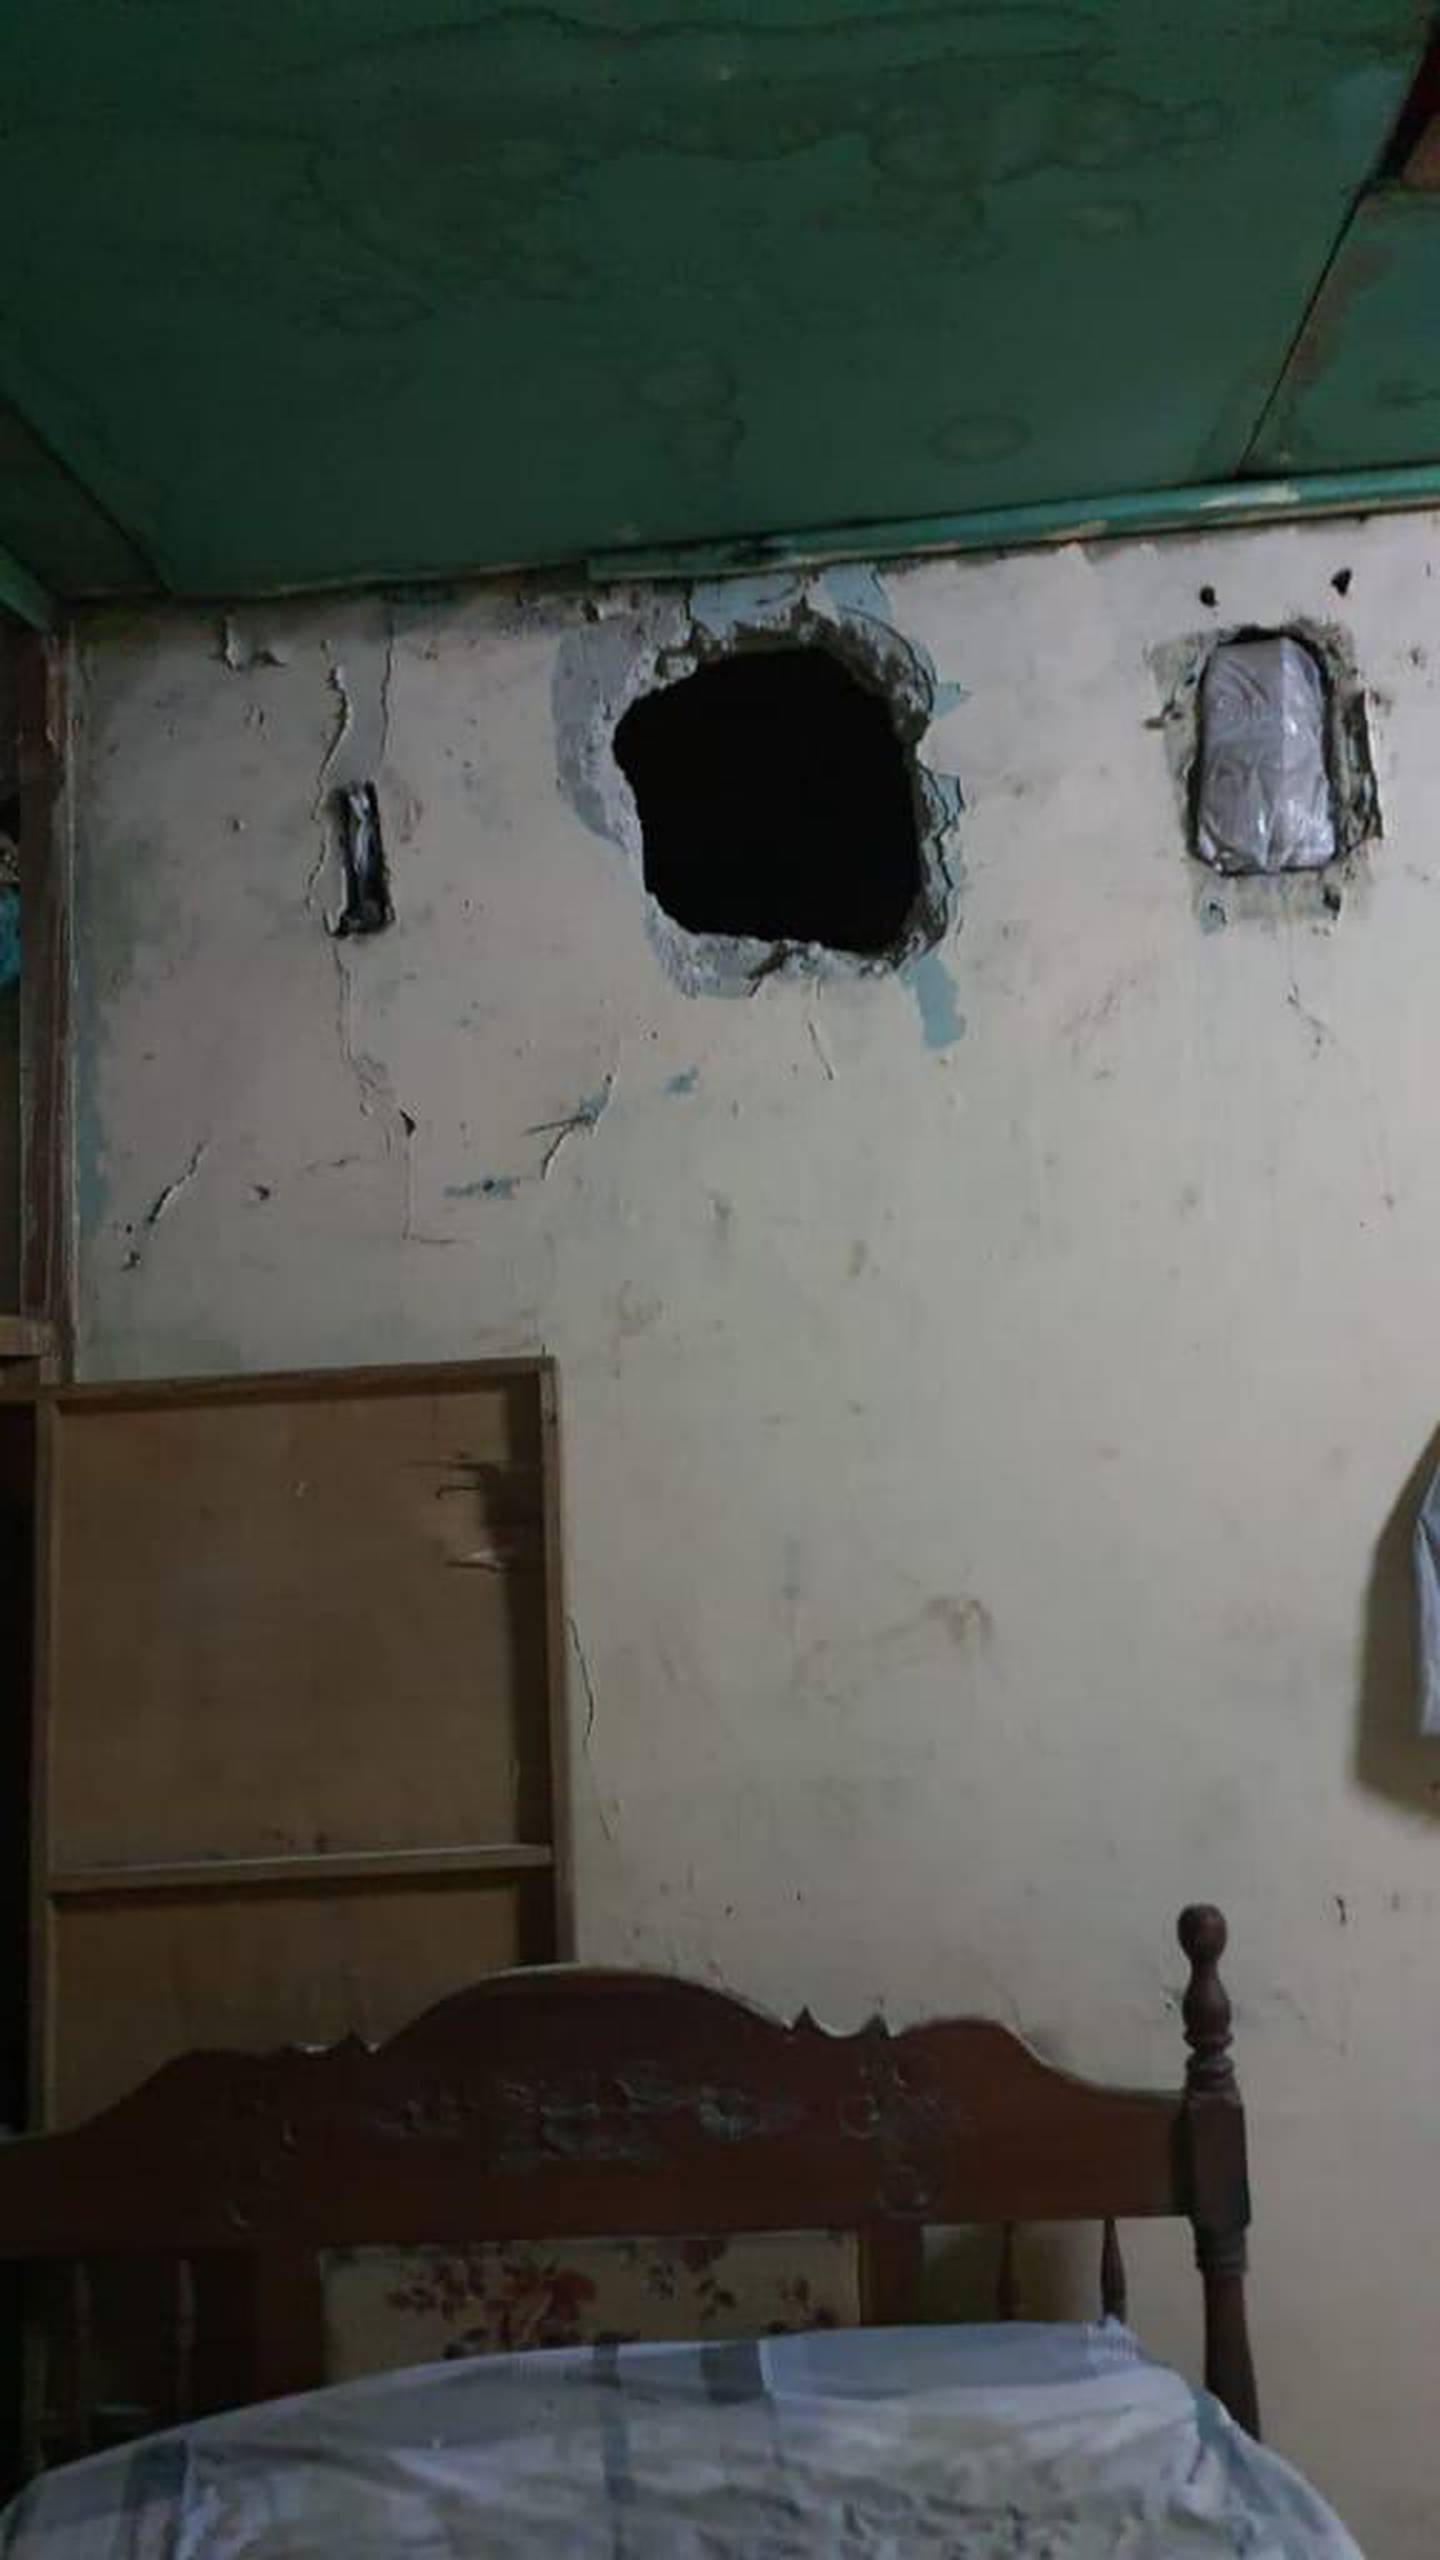 Los asesinos entraron por un boquete en la parte alta del cuarto donde vivía el adulto mayor ultimado en Corredores. Foto: suministrada por Alfonso Quesada.